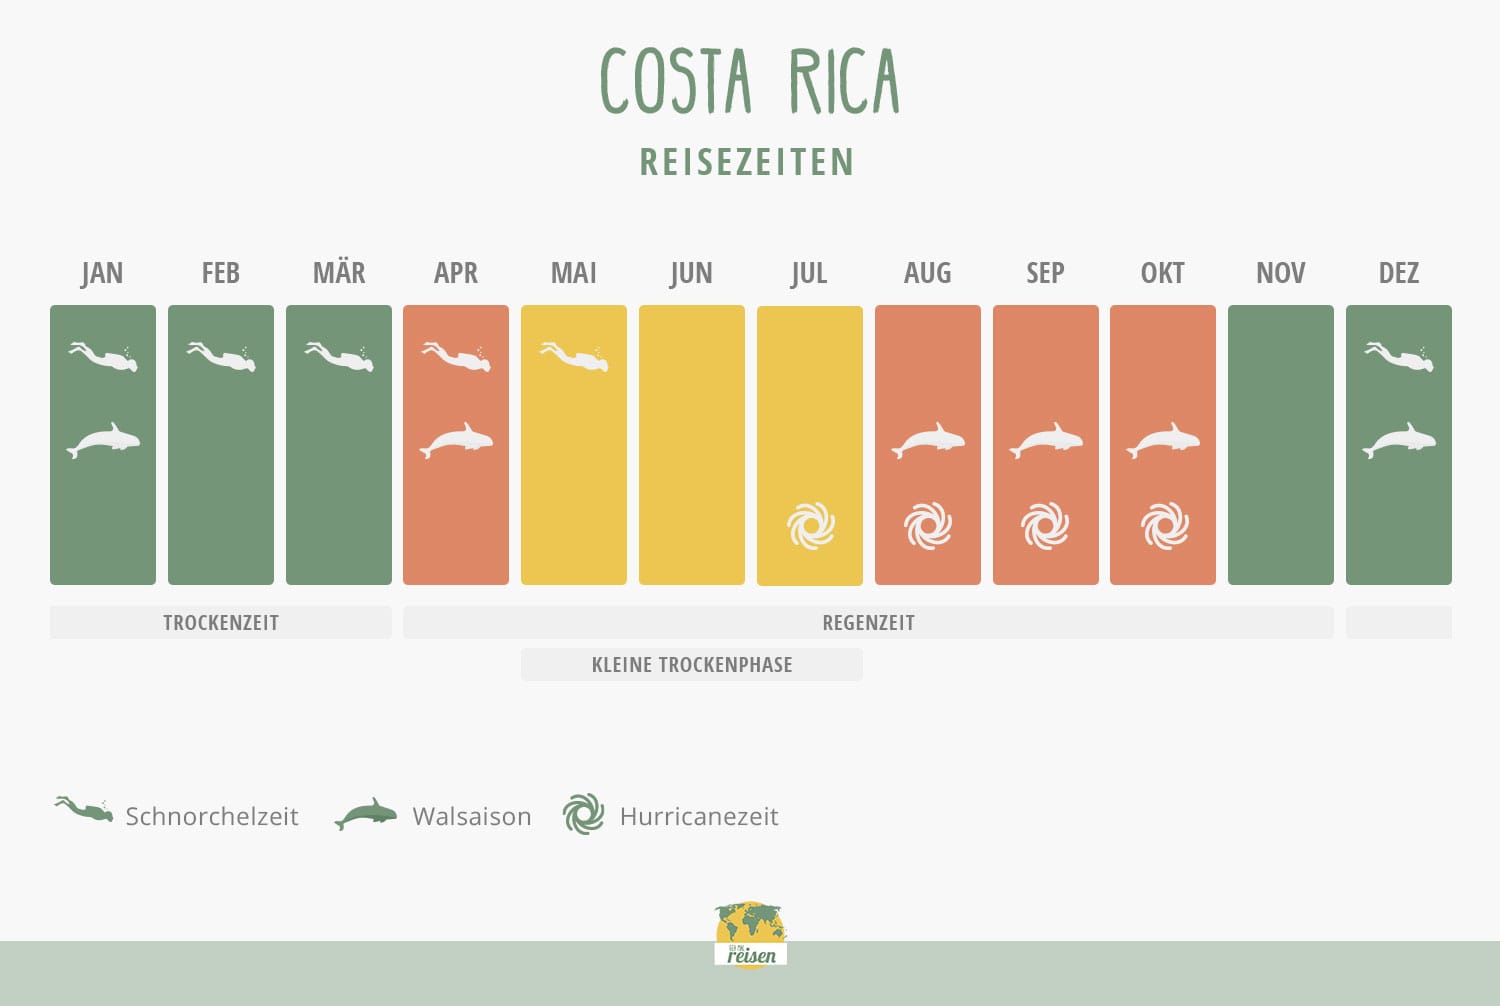 Costa Rica - Beste Reisezeit - nach Monat